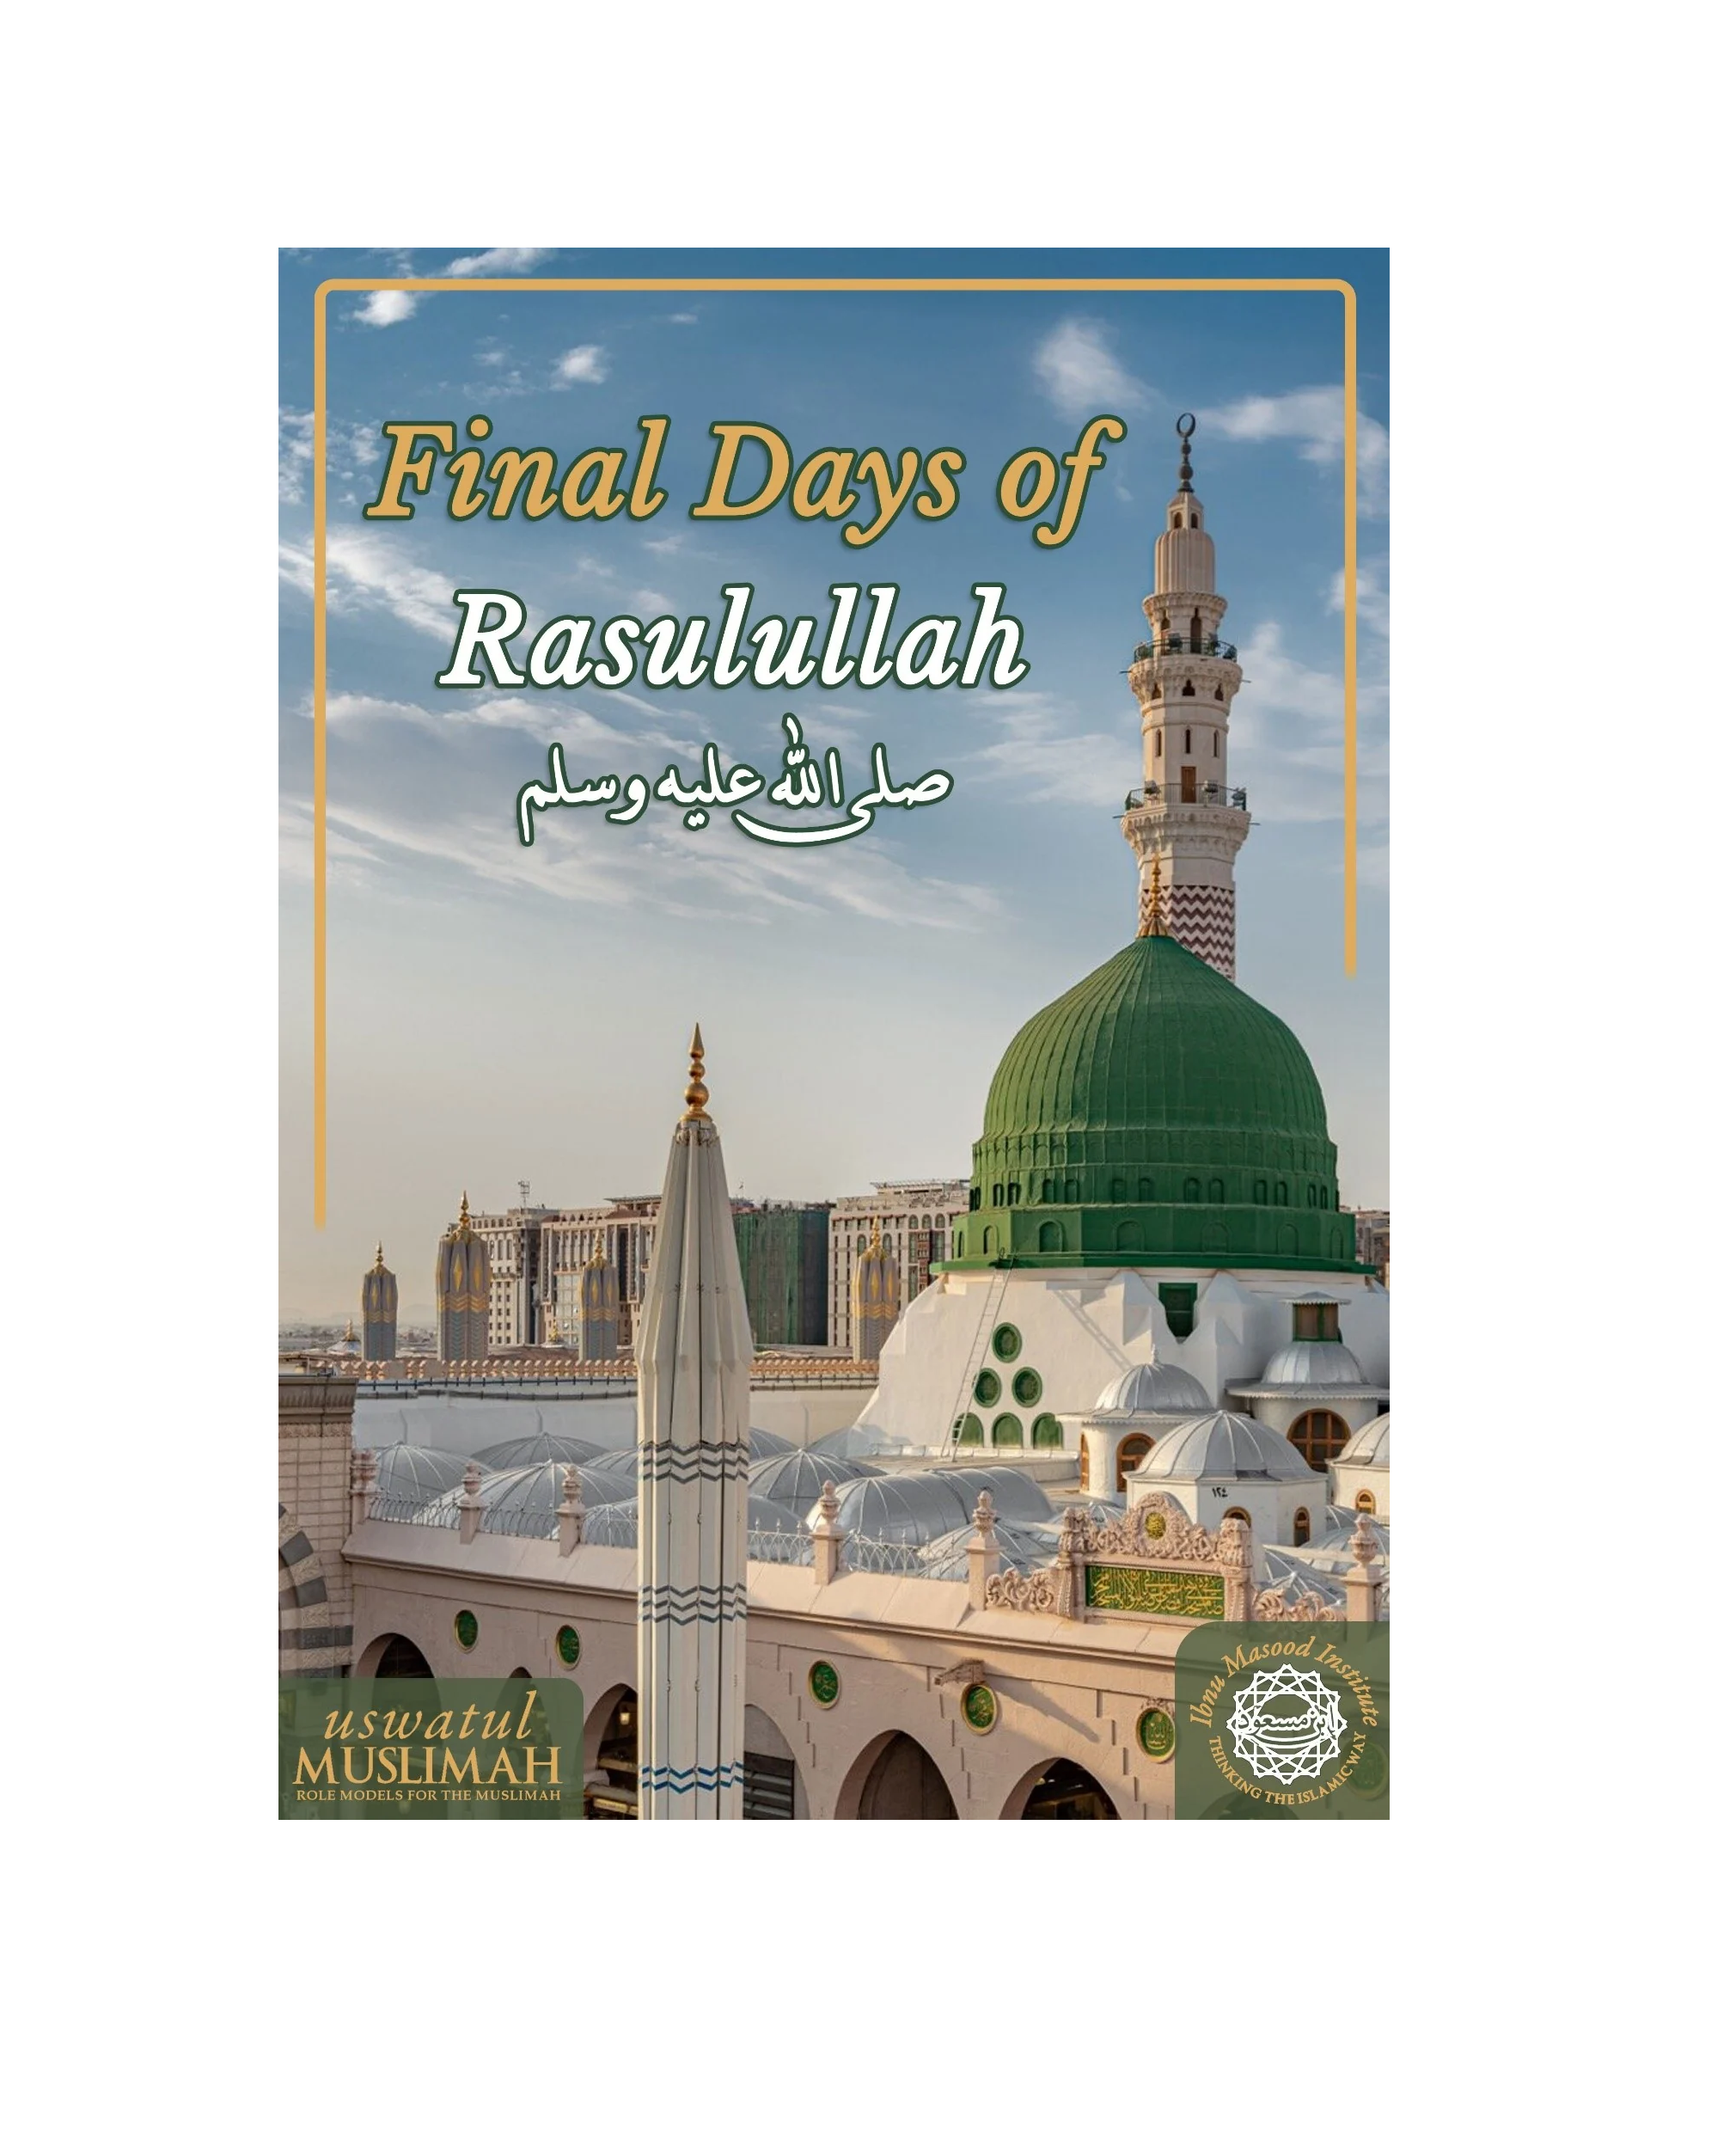 Final Days of Rasulullah (ﷺ) published by Uswatul Muslimah